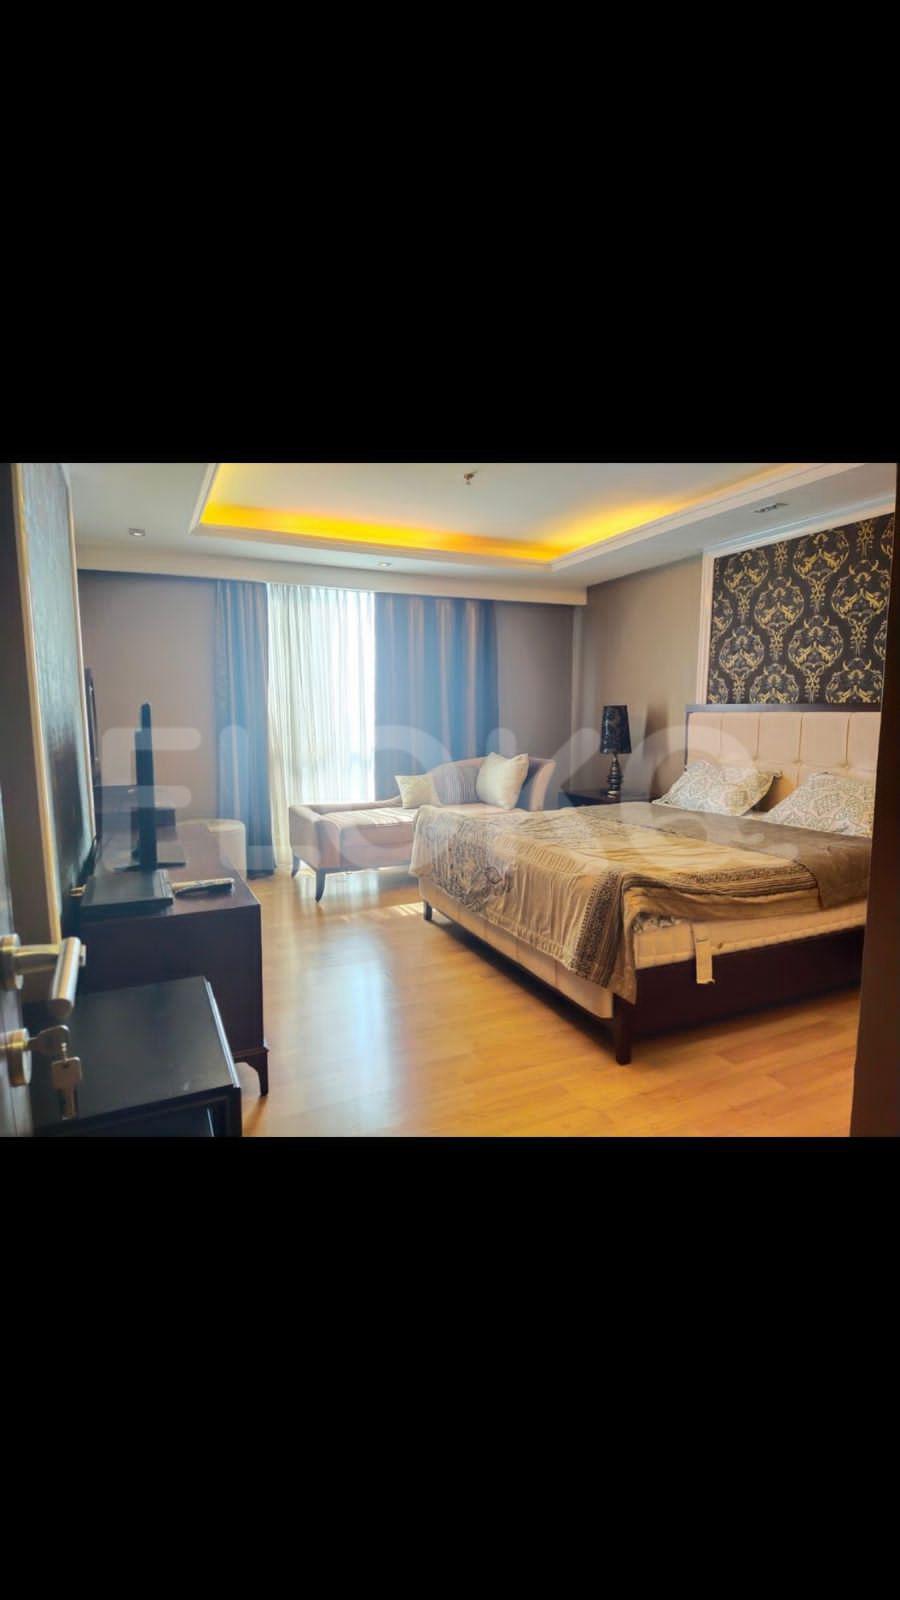 3 Bedroom on 16th Floor fte5dc for Rent in Casa Grande